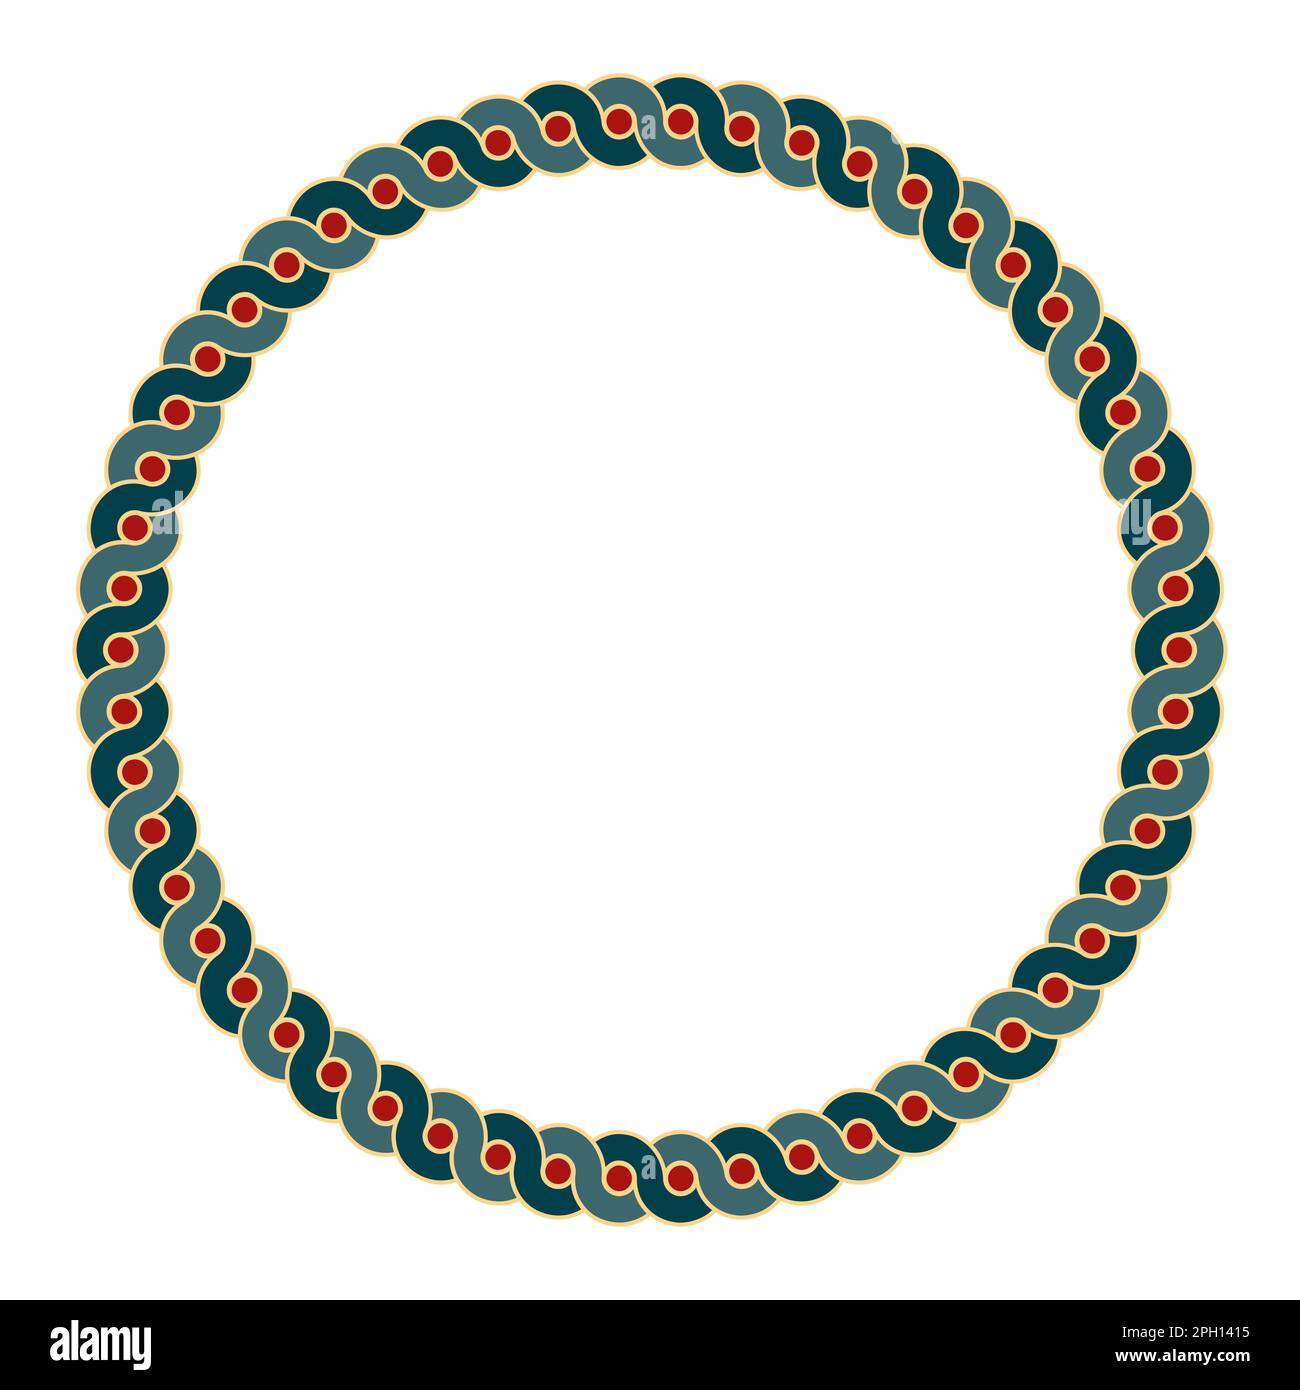 Cadre de cercle coloré avec motif d'ondes entrelacées. Deux lignes en serpentin audacieuses formant une bordure circulaire avec des points rouges entre les vagues qui se chevauchent. Banque D'Images